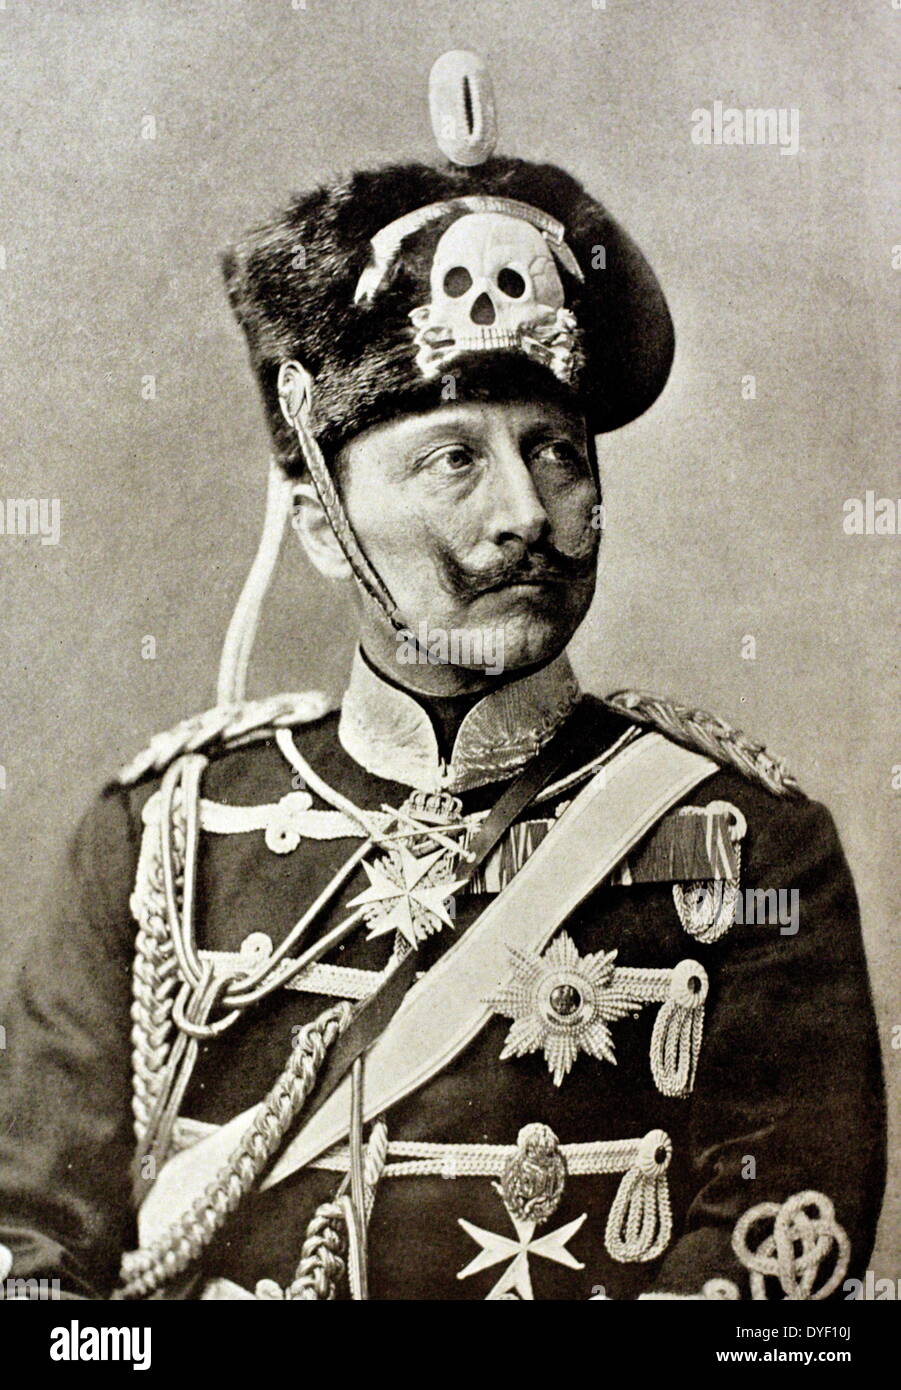 Portrait Foto von Kaiser Wilhelm III., (Friedrich Wilhelm Viktor Albert von Preußen). Zwischen 1859 - 1941 lebte, und war der letzte deutsche Kaiser und König von Preußen. Er regierte im Deutschen Reich und dem Königreich Preußen von Juni 1888 bis November 1918, war der Enkel von der britischen Königin Victoria. Stockfoto